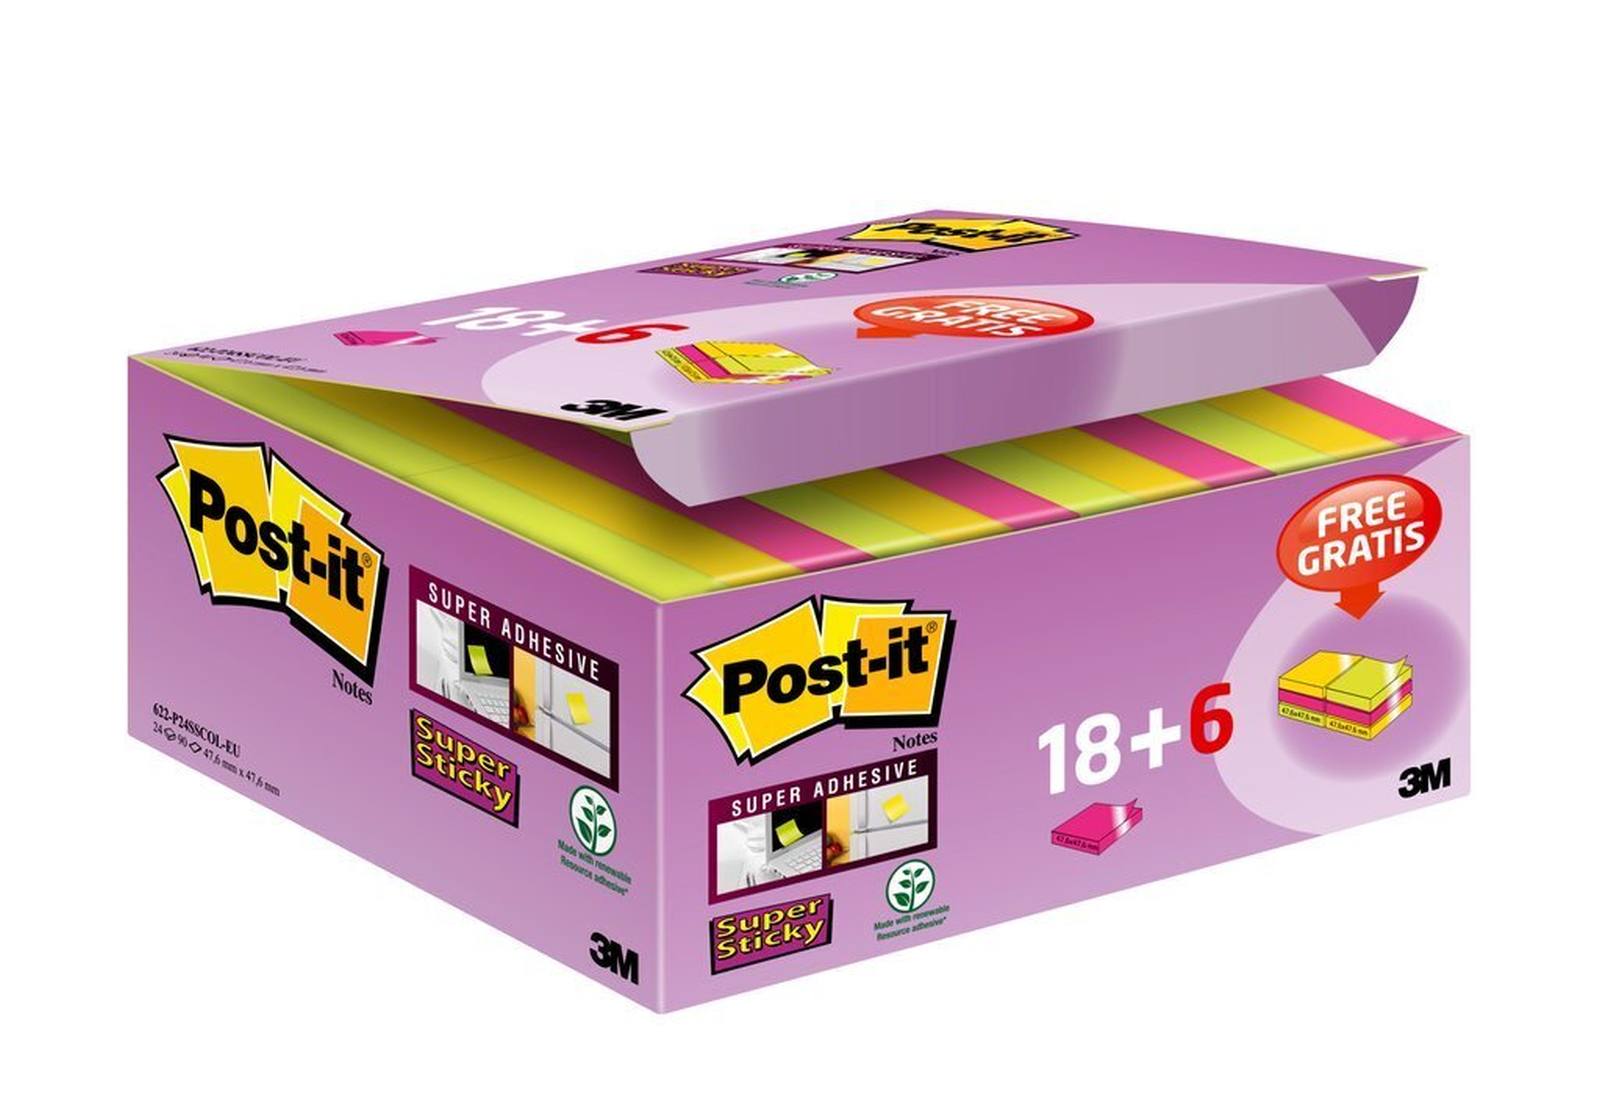 3M Post-it Super Sticky Notes Promotion 622P24SC, 24 blocs de 90 feuilles dans une boîte à prix avantageux, ultra rose, -jaune, vert fluo, 48 mm x 48 mm, non cellophané individuellement, certifié PEFC